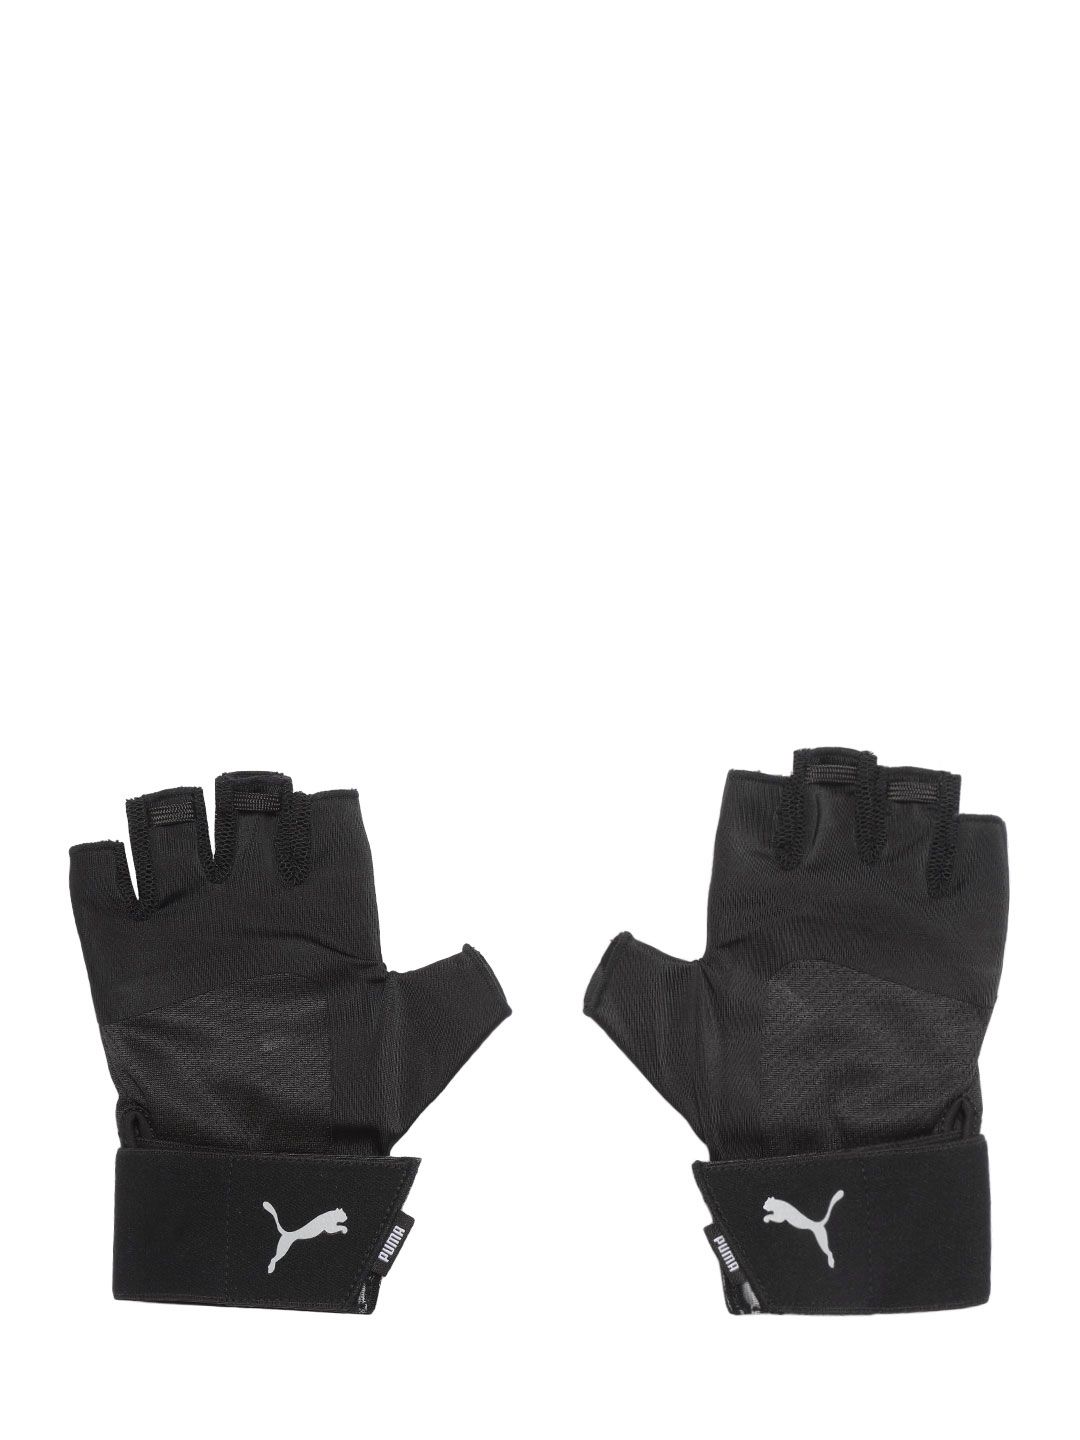 Puma Unisex 1Black Solid Training Essential Premium Gloves with Wrist Strap Price in India